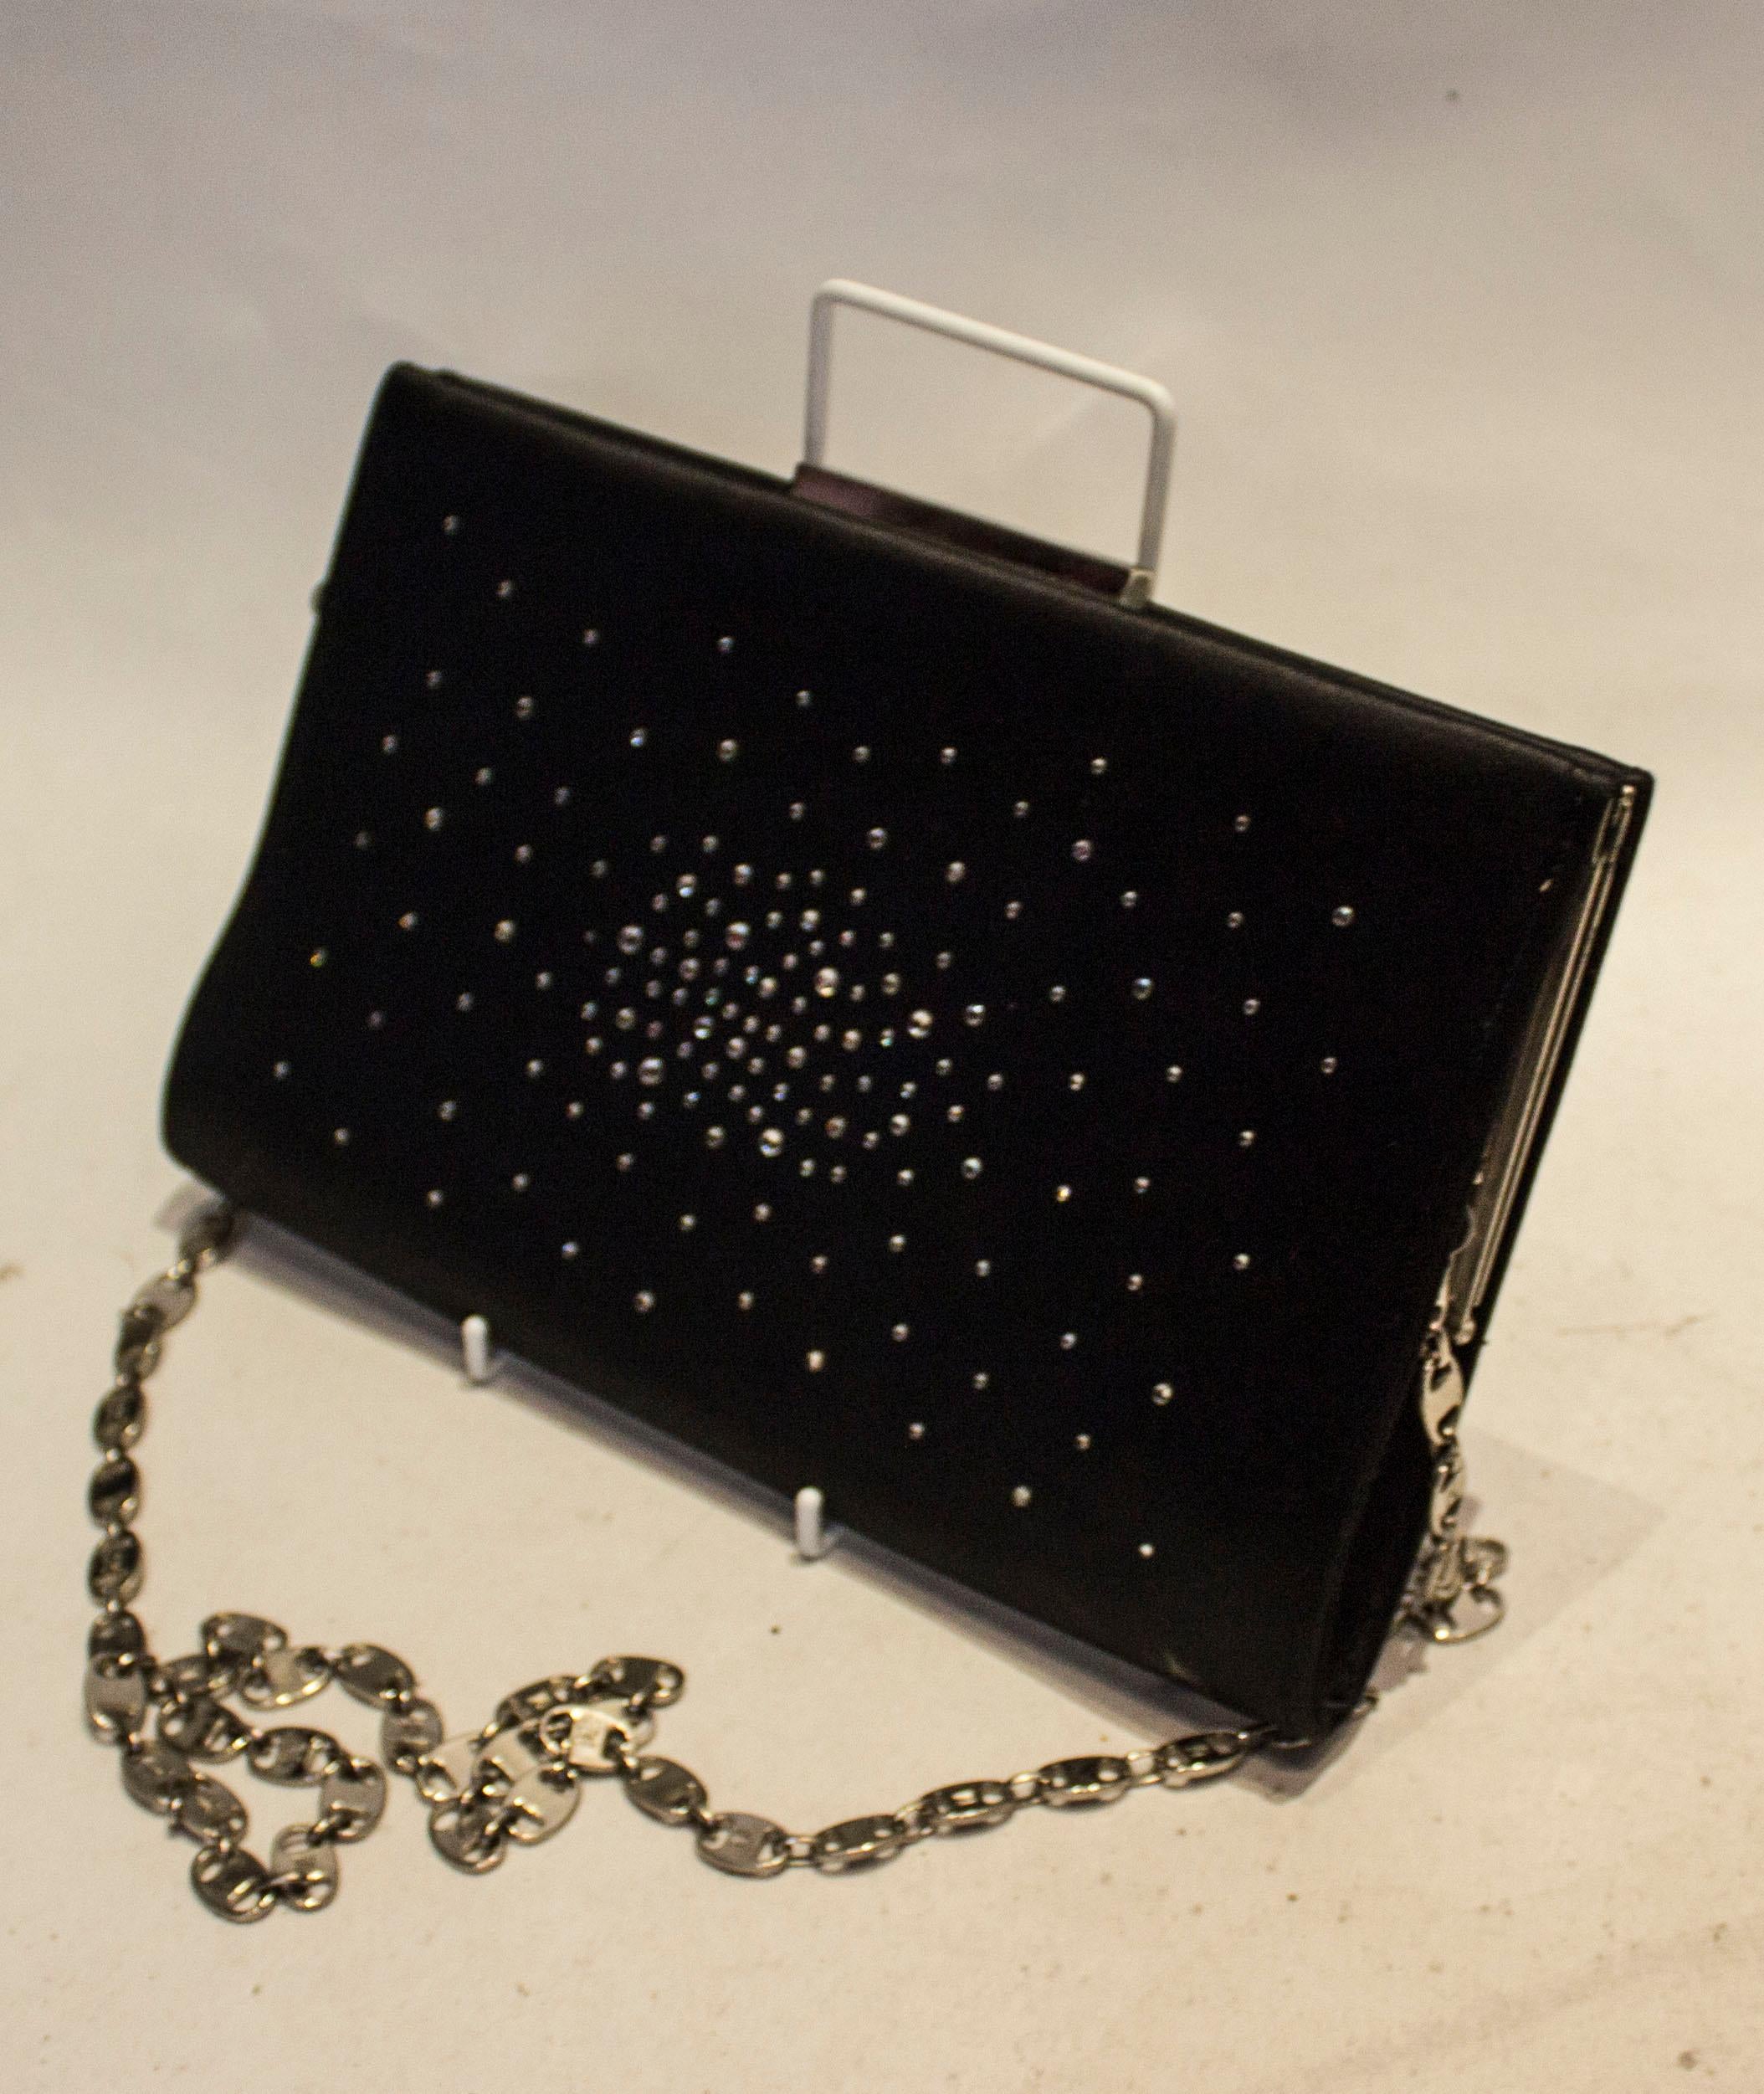 Eine schicke Vintage-Abendtasche von Brun Magli Couture. Die Tasche aus schwarzem Satin, beidseitig mit Diamanten besetzt, hat eine Innentasche und eine Öffnung oben.

Abmessungen: Breite 10 1/2'', Höhe 6 1/2'', Tiefe 1 1/2'', Kettengrifflänge 43''.